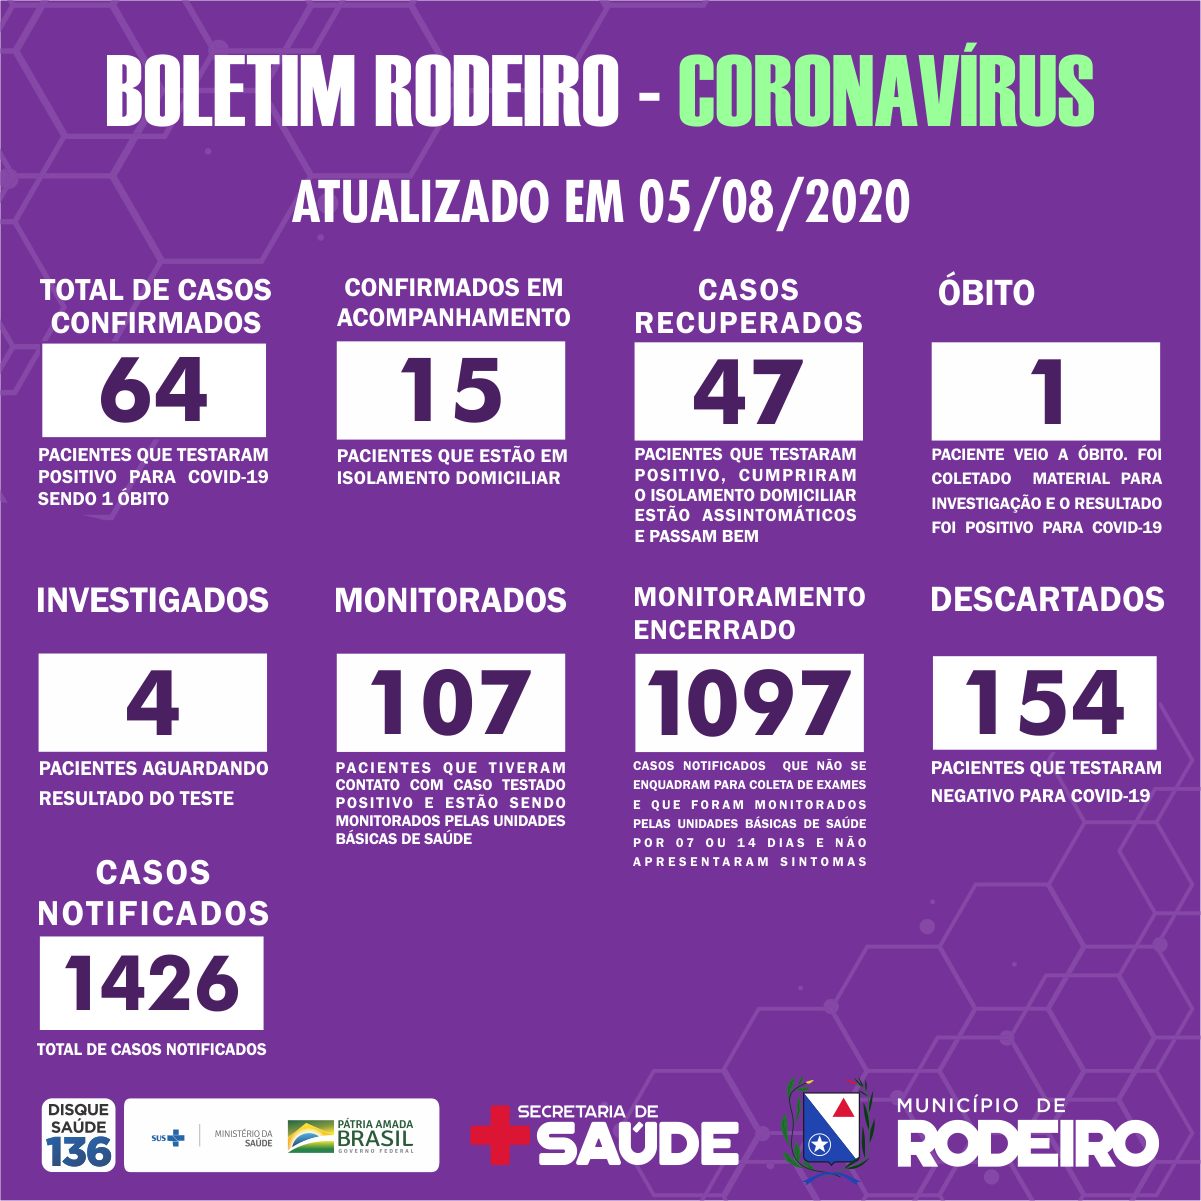 Boletim Epidemiológico do Município de Rodeiro sobre coronavírus, atualizado em 05/08/2020